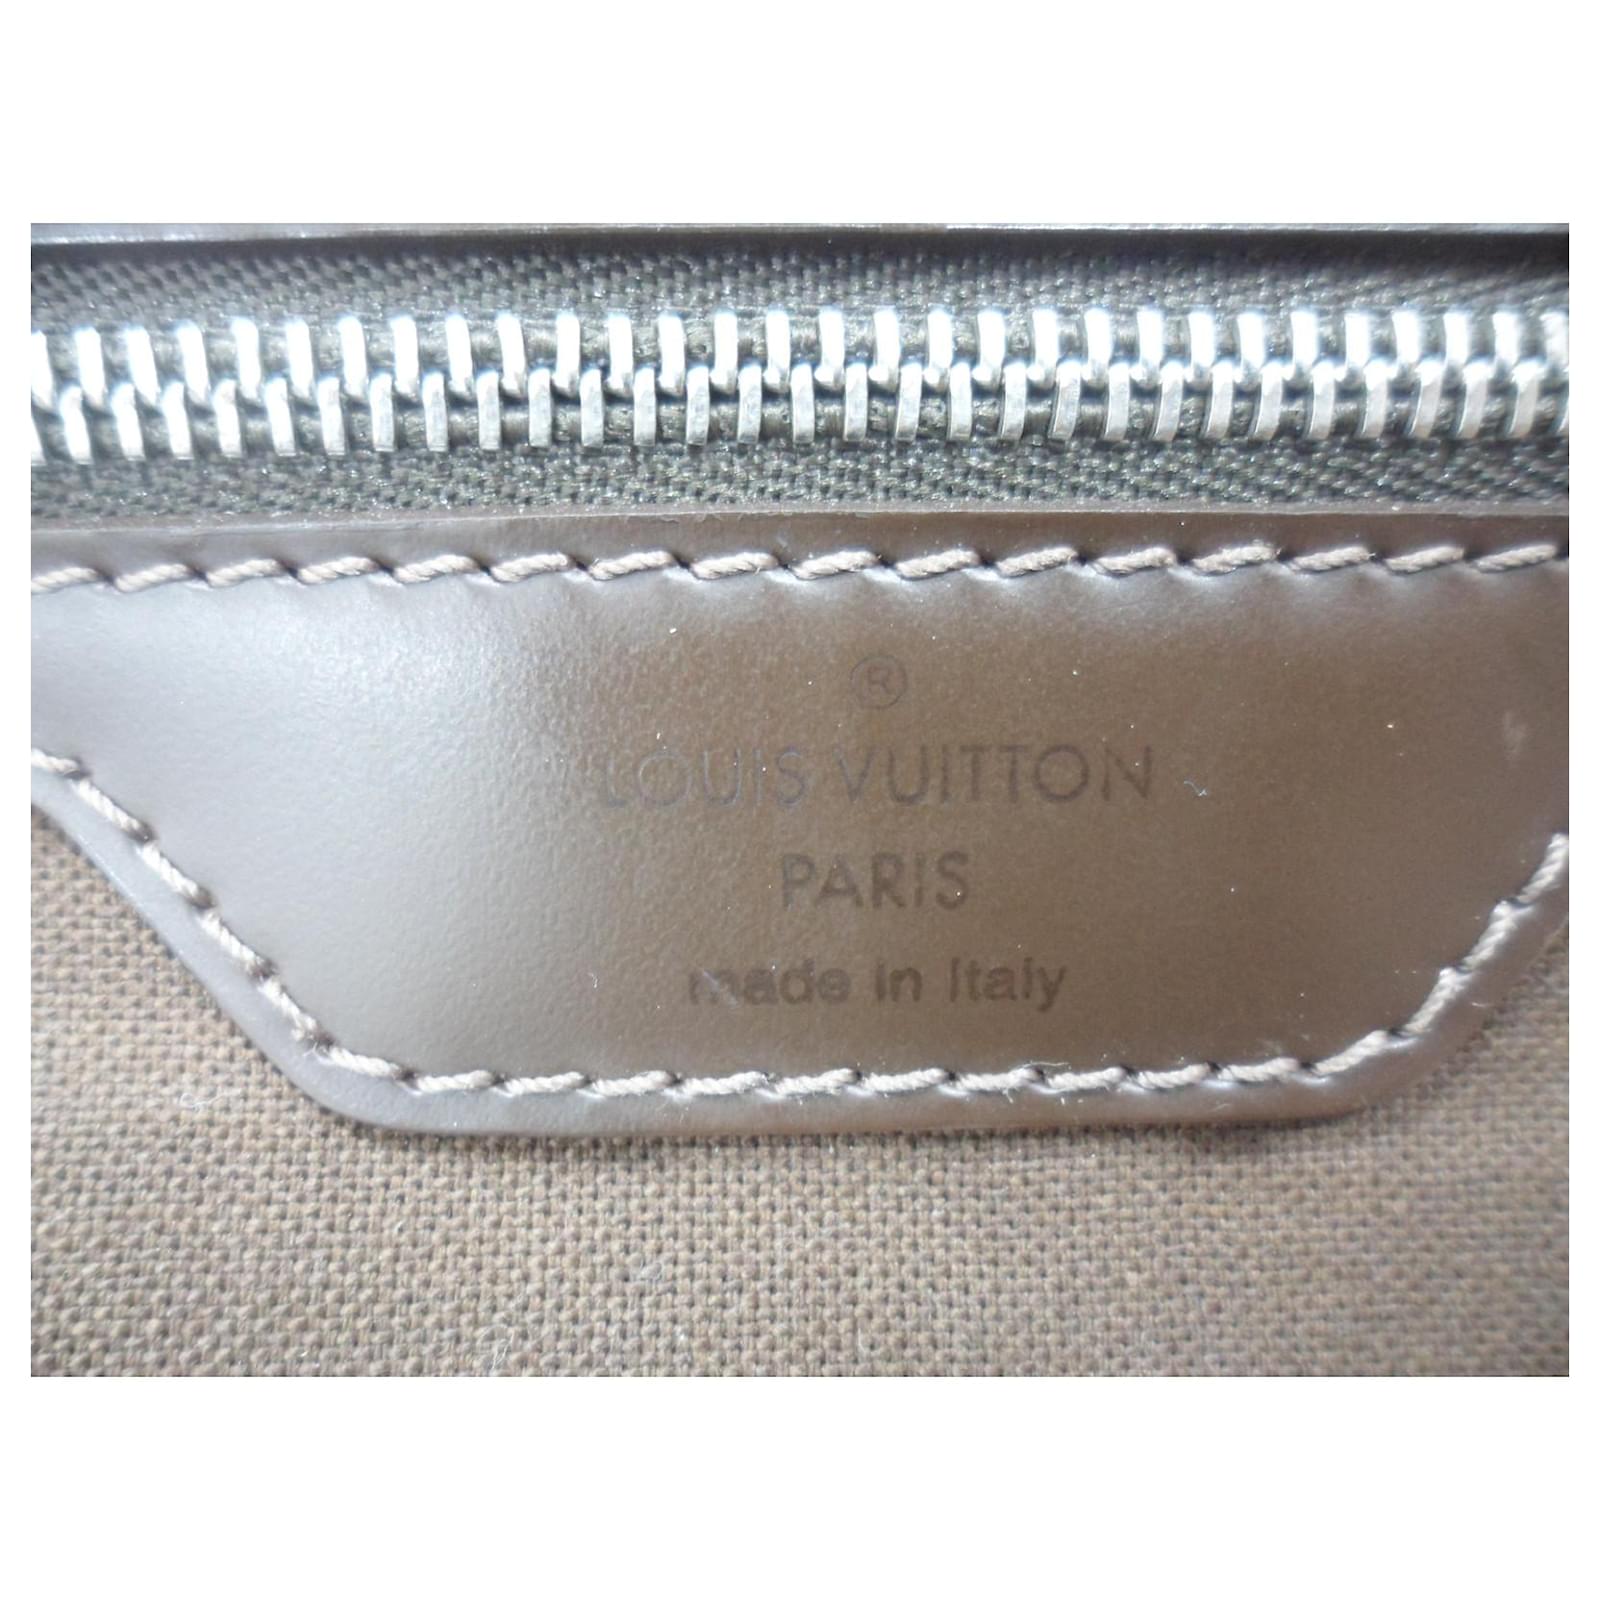 Louis Vuitton Brown Taiga Leather Viktor Messenger Bag - Yoogi's Closet